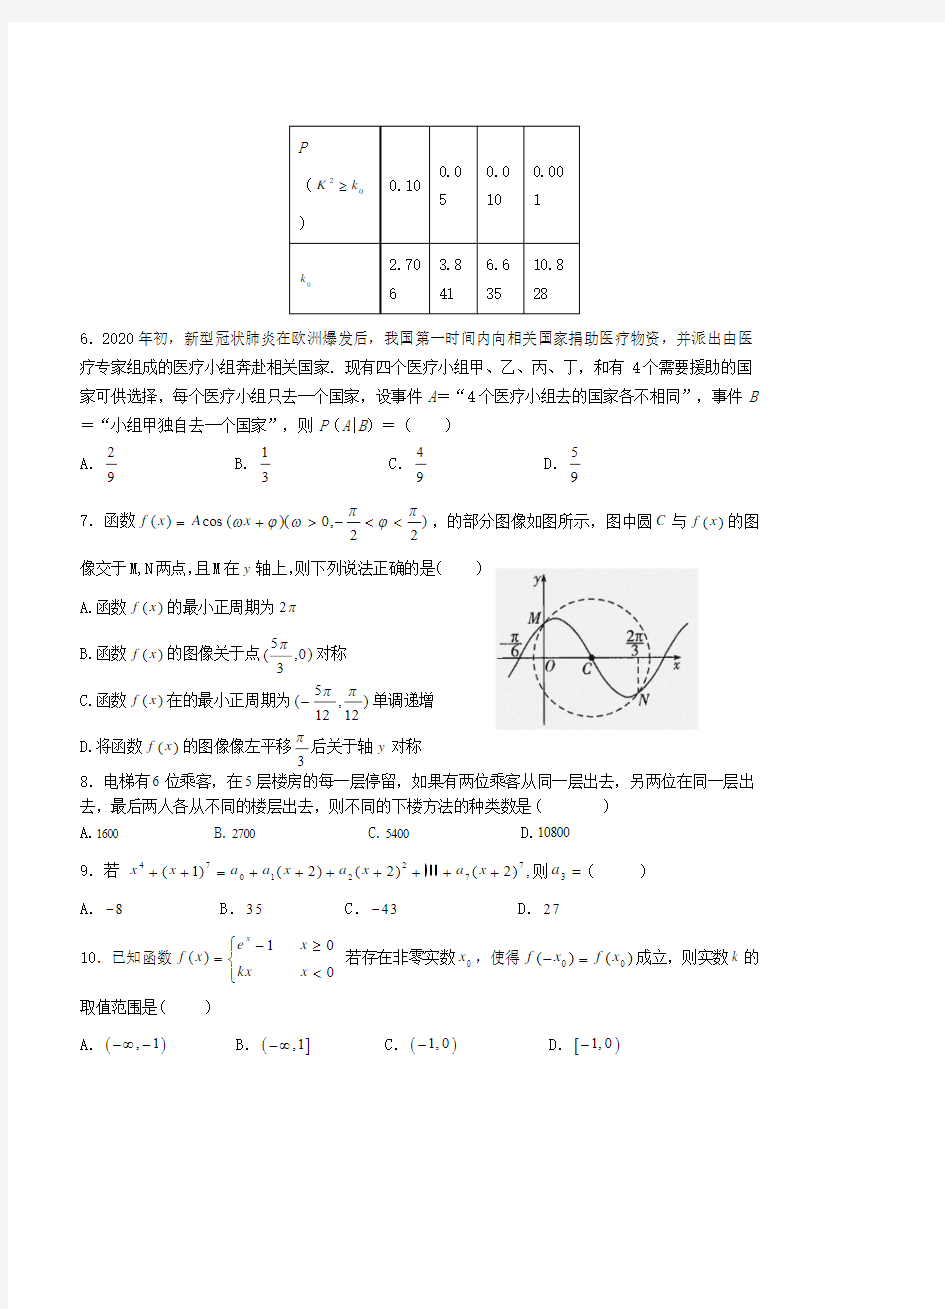 黑龙江省2020年上学期大庆实验中学高三数学理开学考试试题